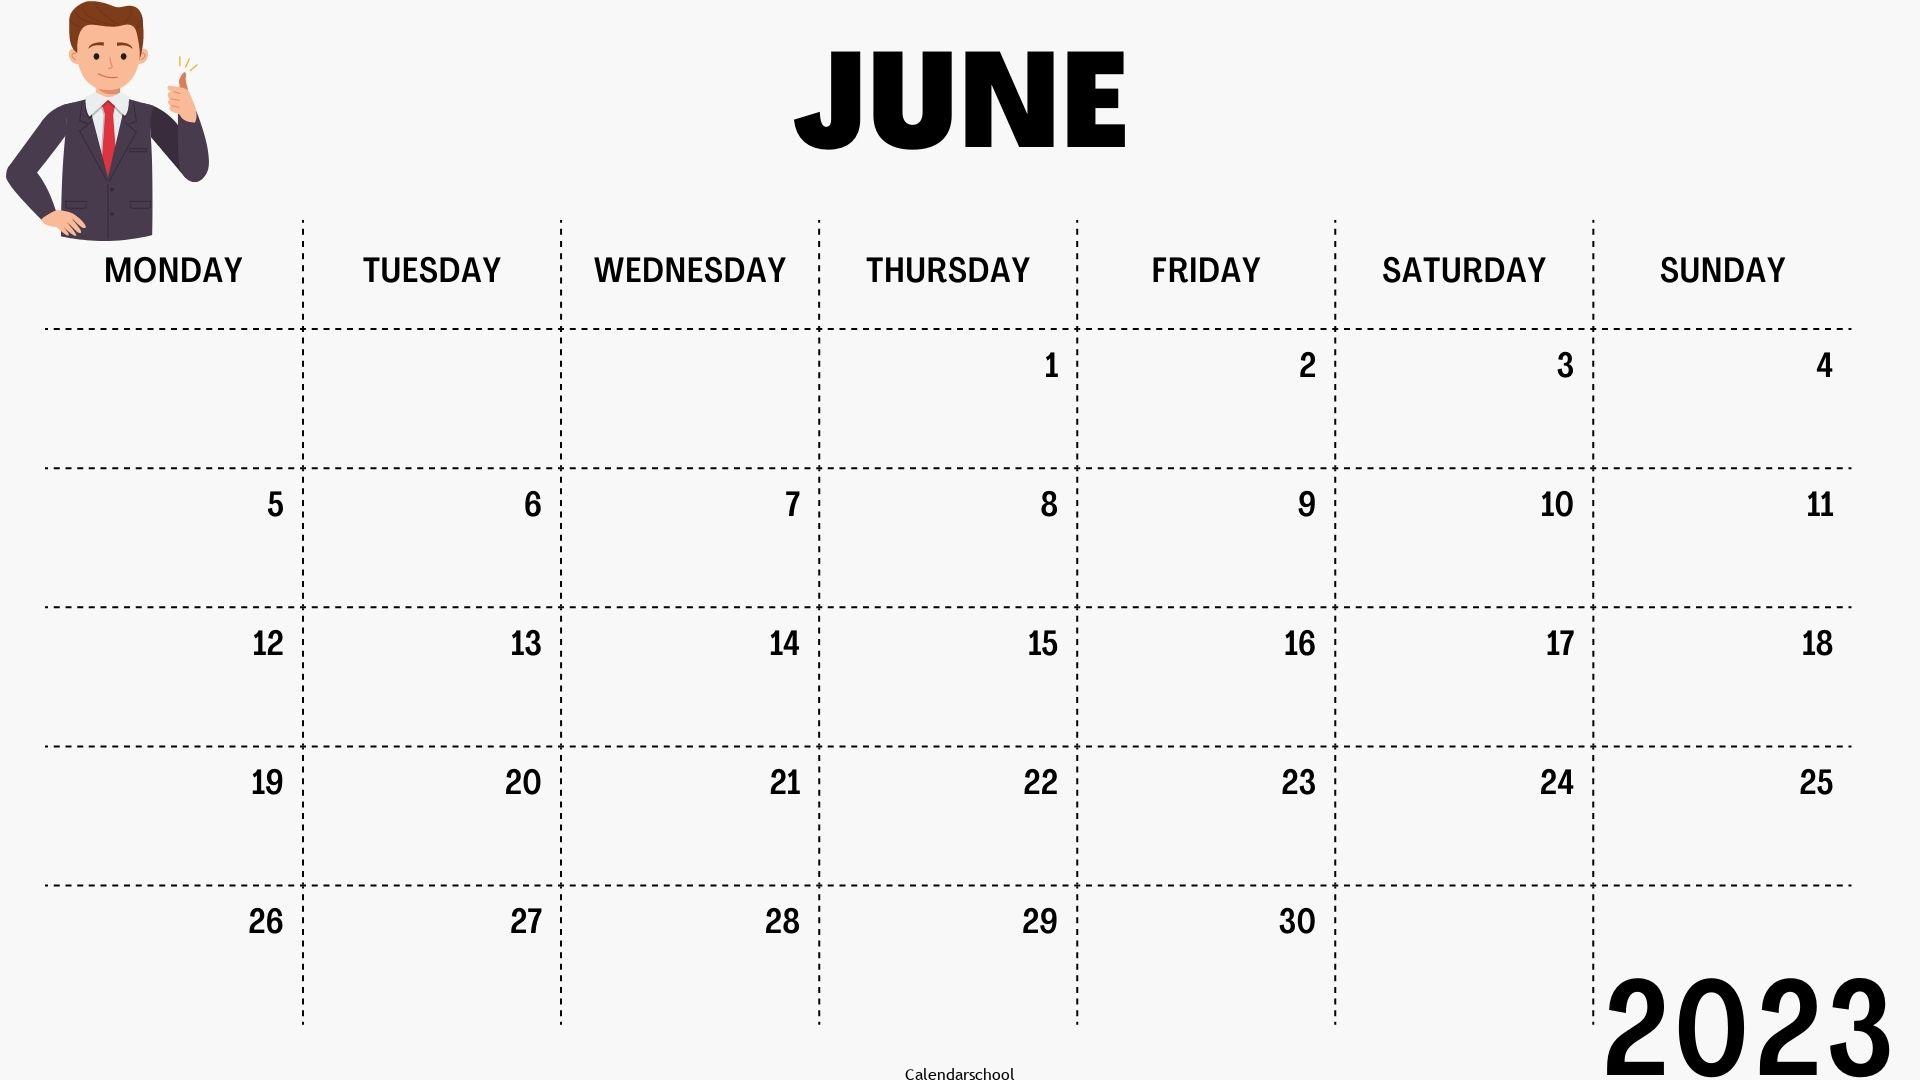 Calendar 2023 June Month